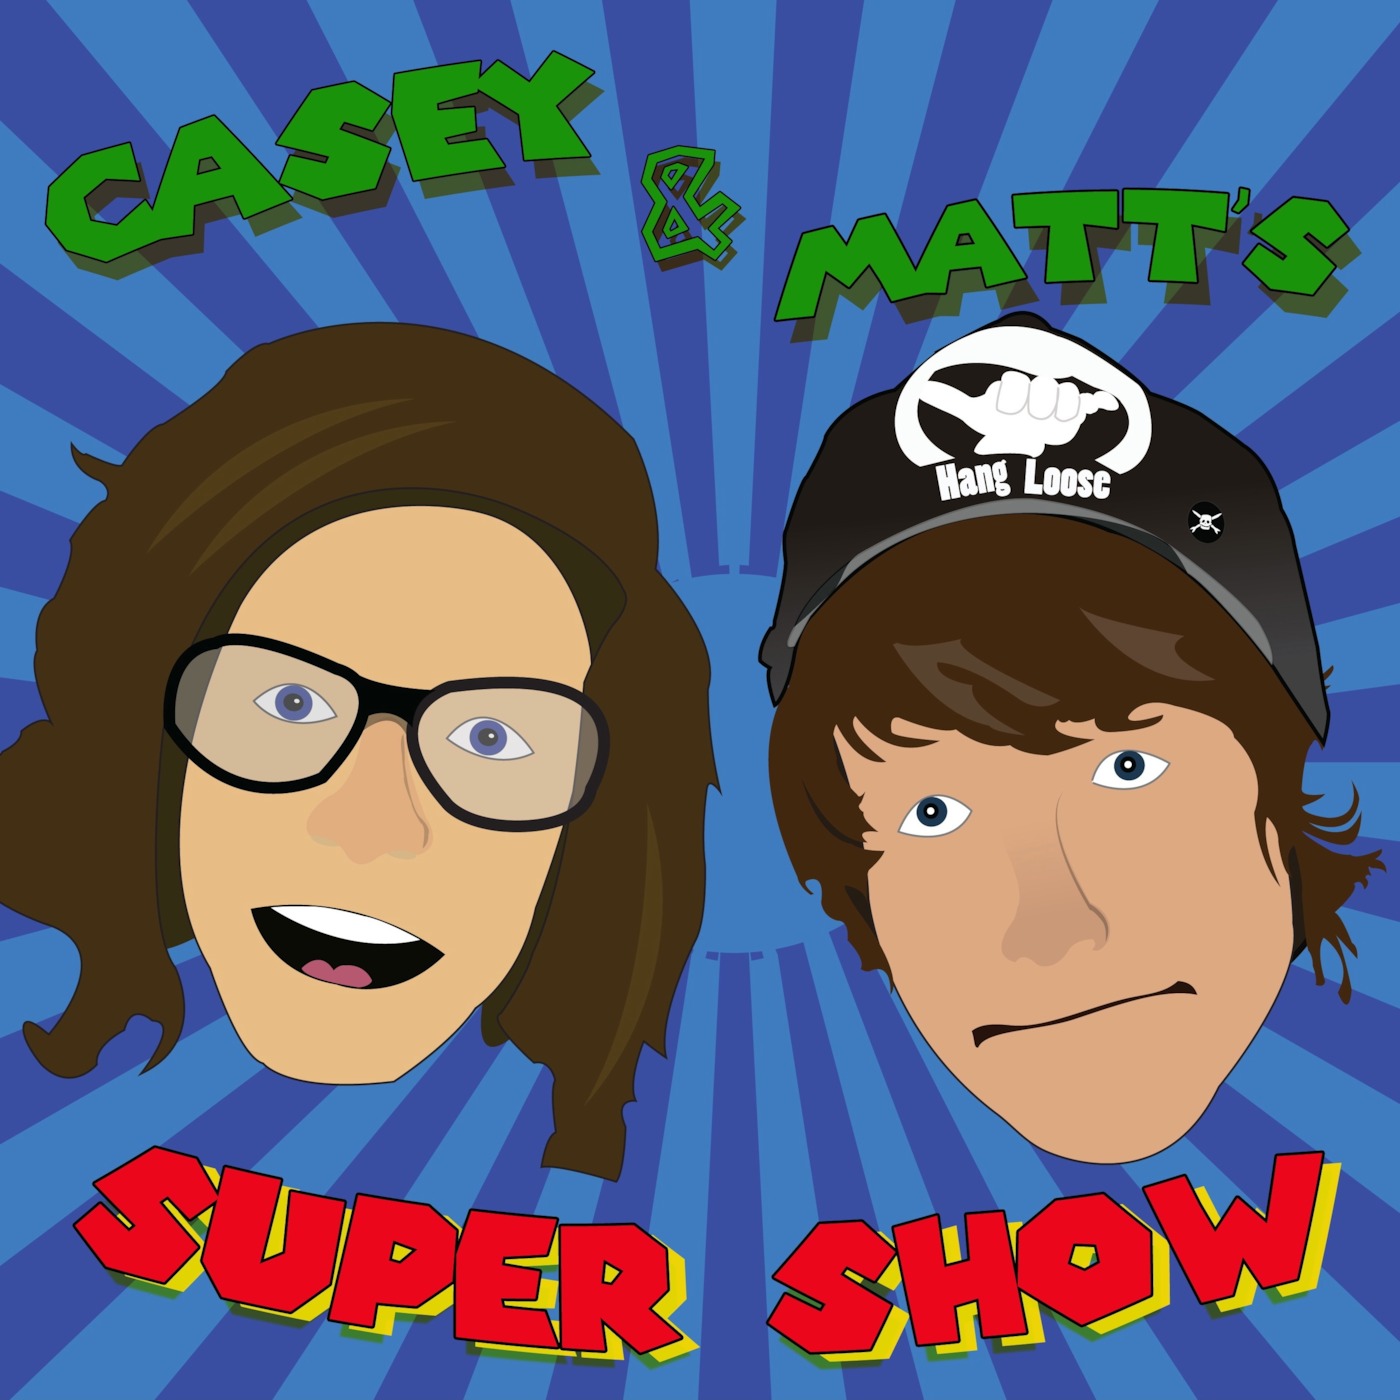 Casey & Matt's Super Show